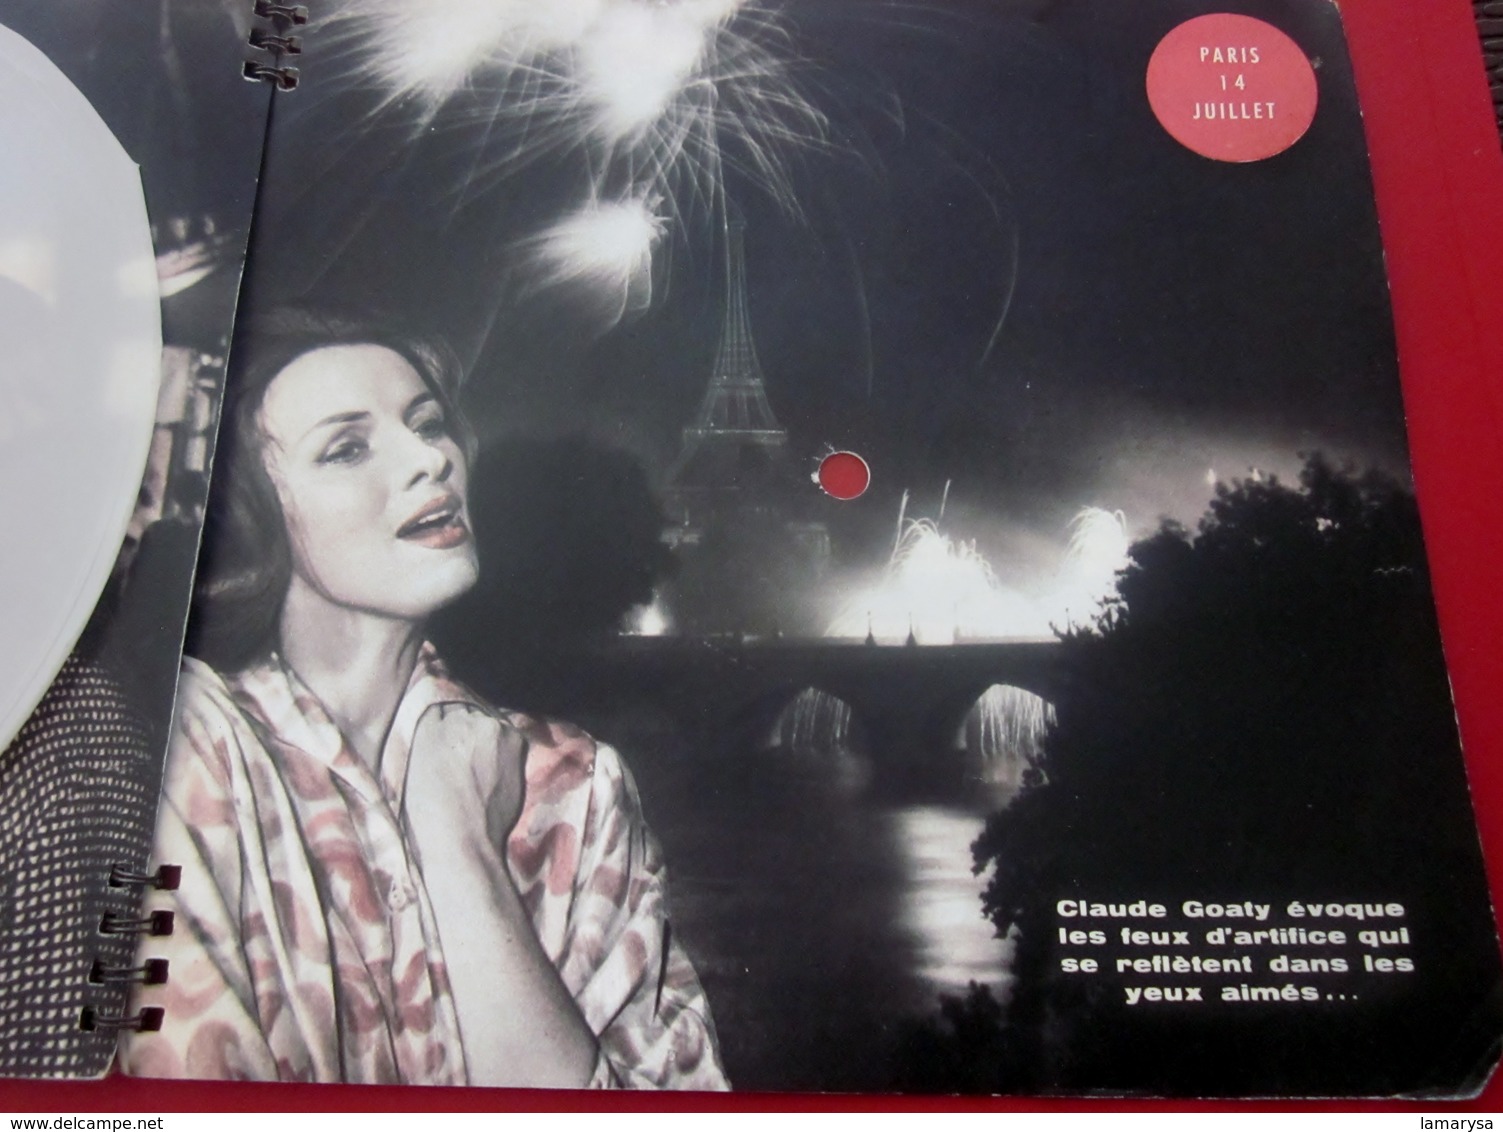 Magazine Sonorama N°21-Jui 1960-Musique Disque Vinyle Format spécial-Danielle Darrieux-Algérie-Rosalie Dubois-airs Pubs